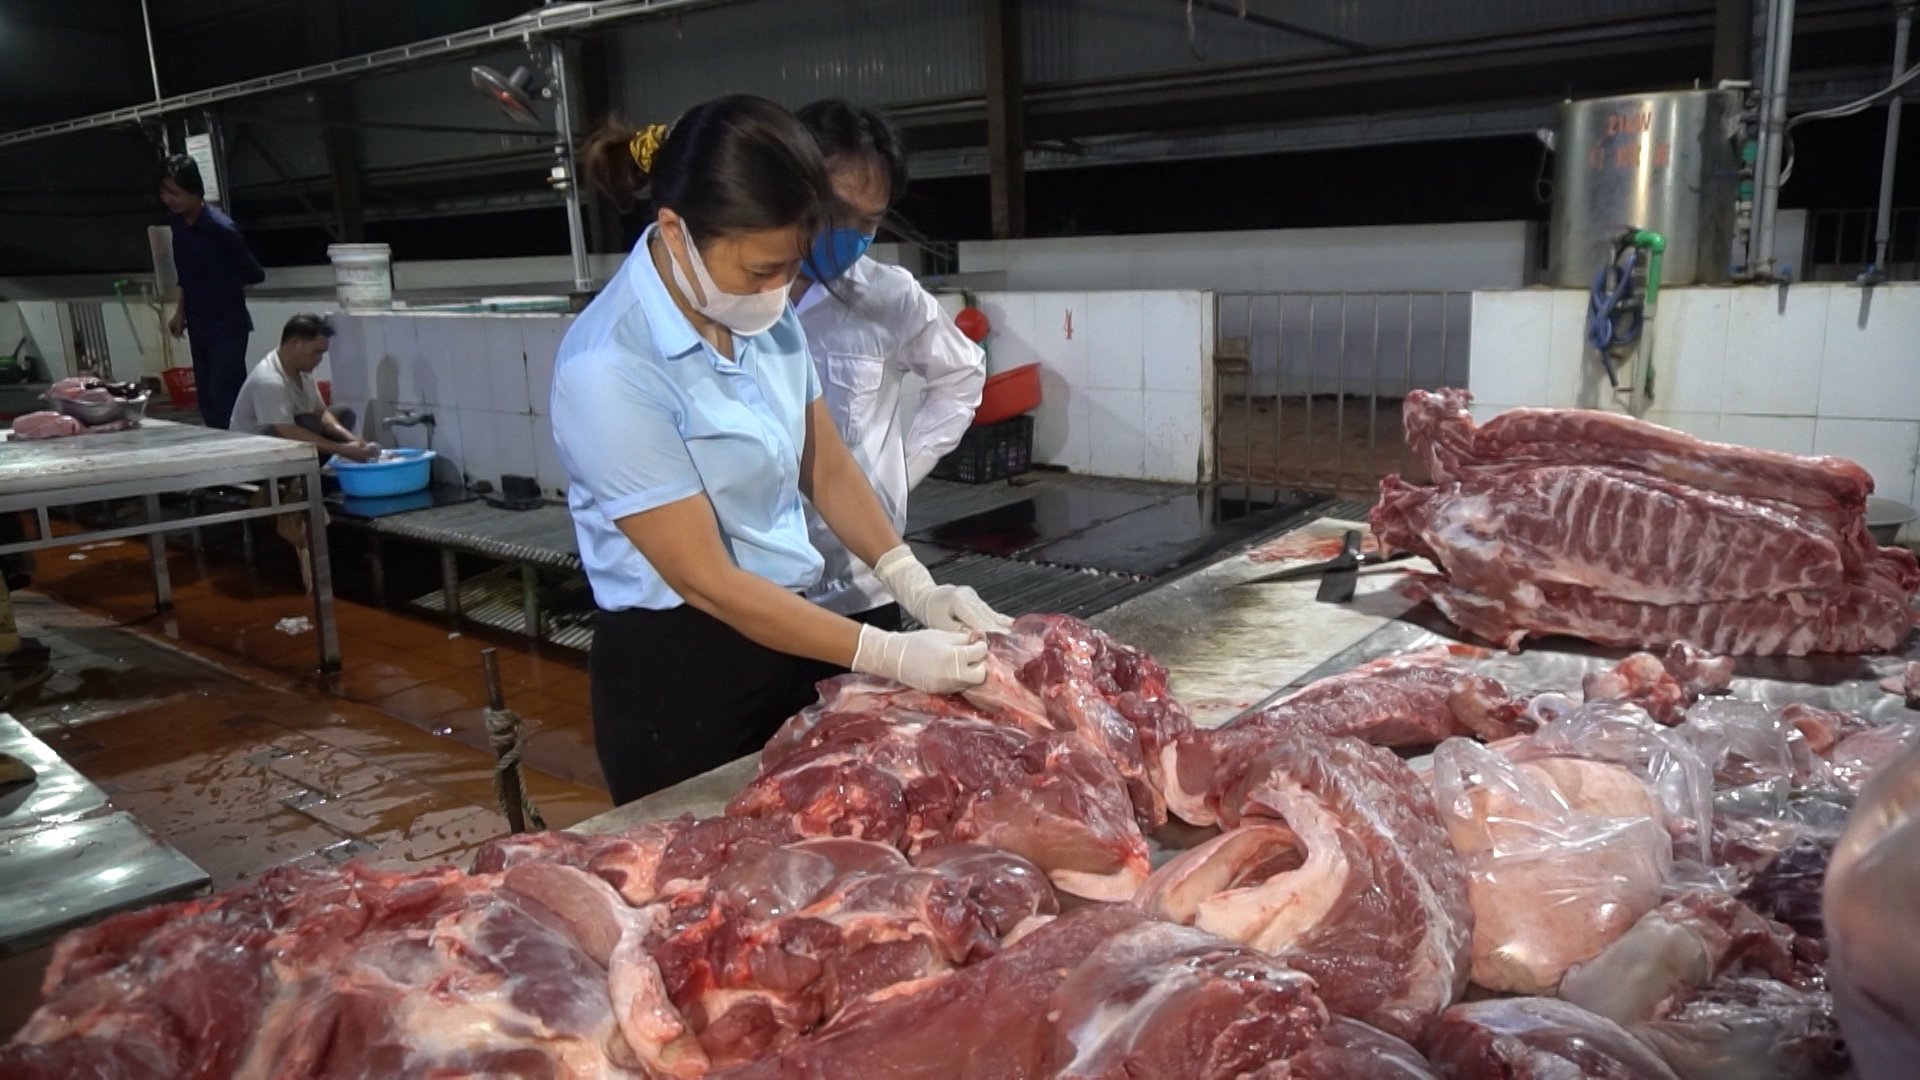 Cán bộ thú y đóng dấu kiểm dịch trước khi thực phẩm đưa ra thị trường tại Cơ sở giết mổ tập trung Đức hà, TP Uông Bí vào tháng 1/2021. Ảnh: Đinh Hằng.